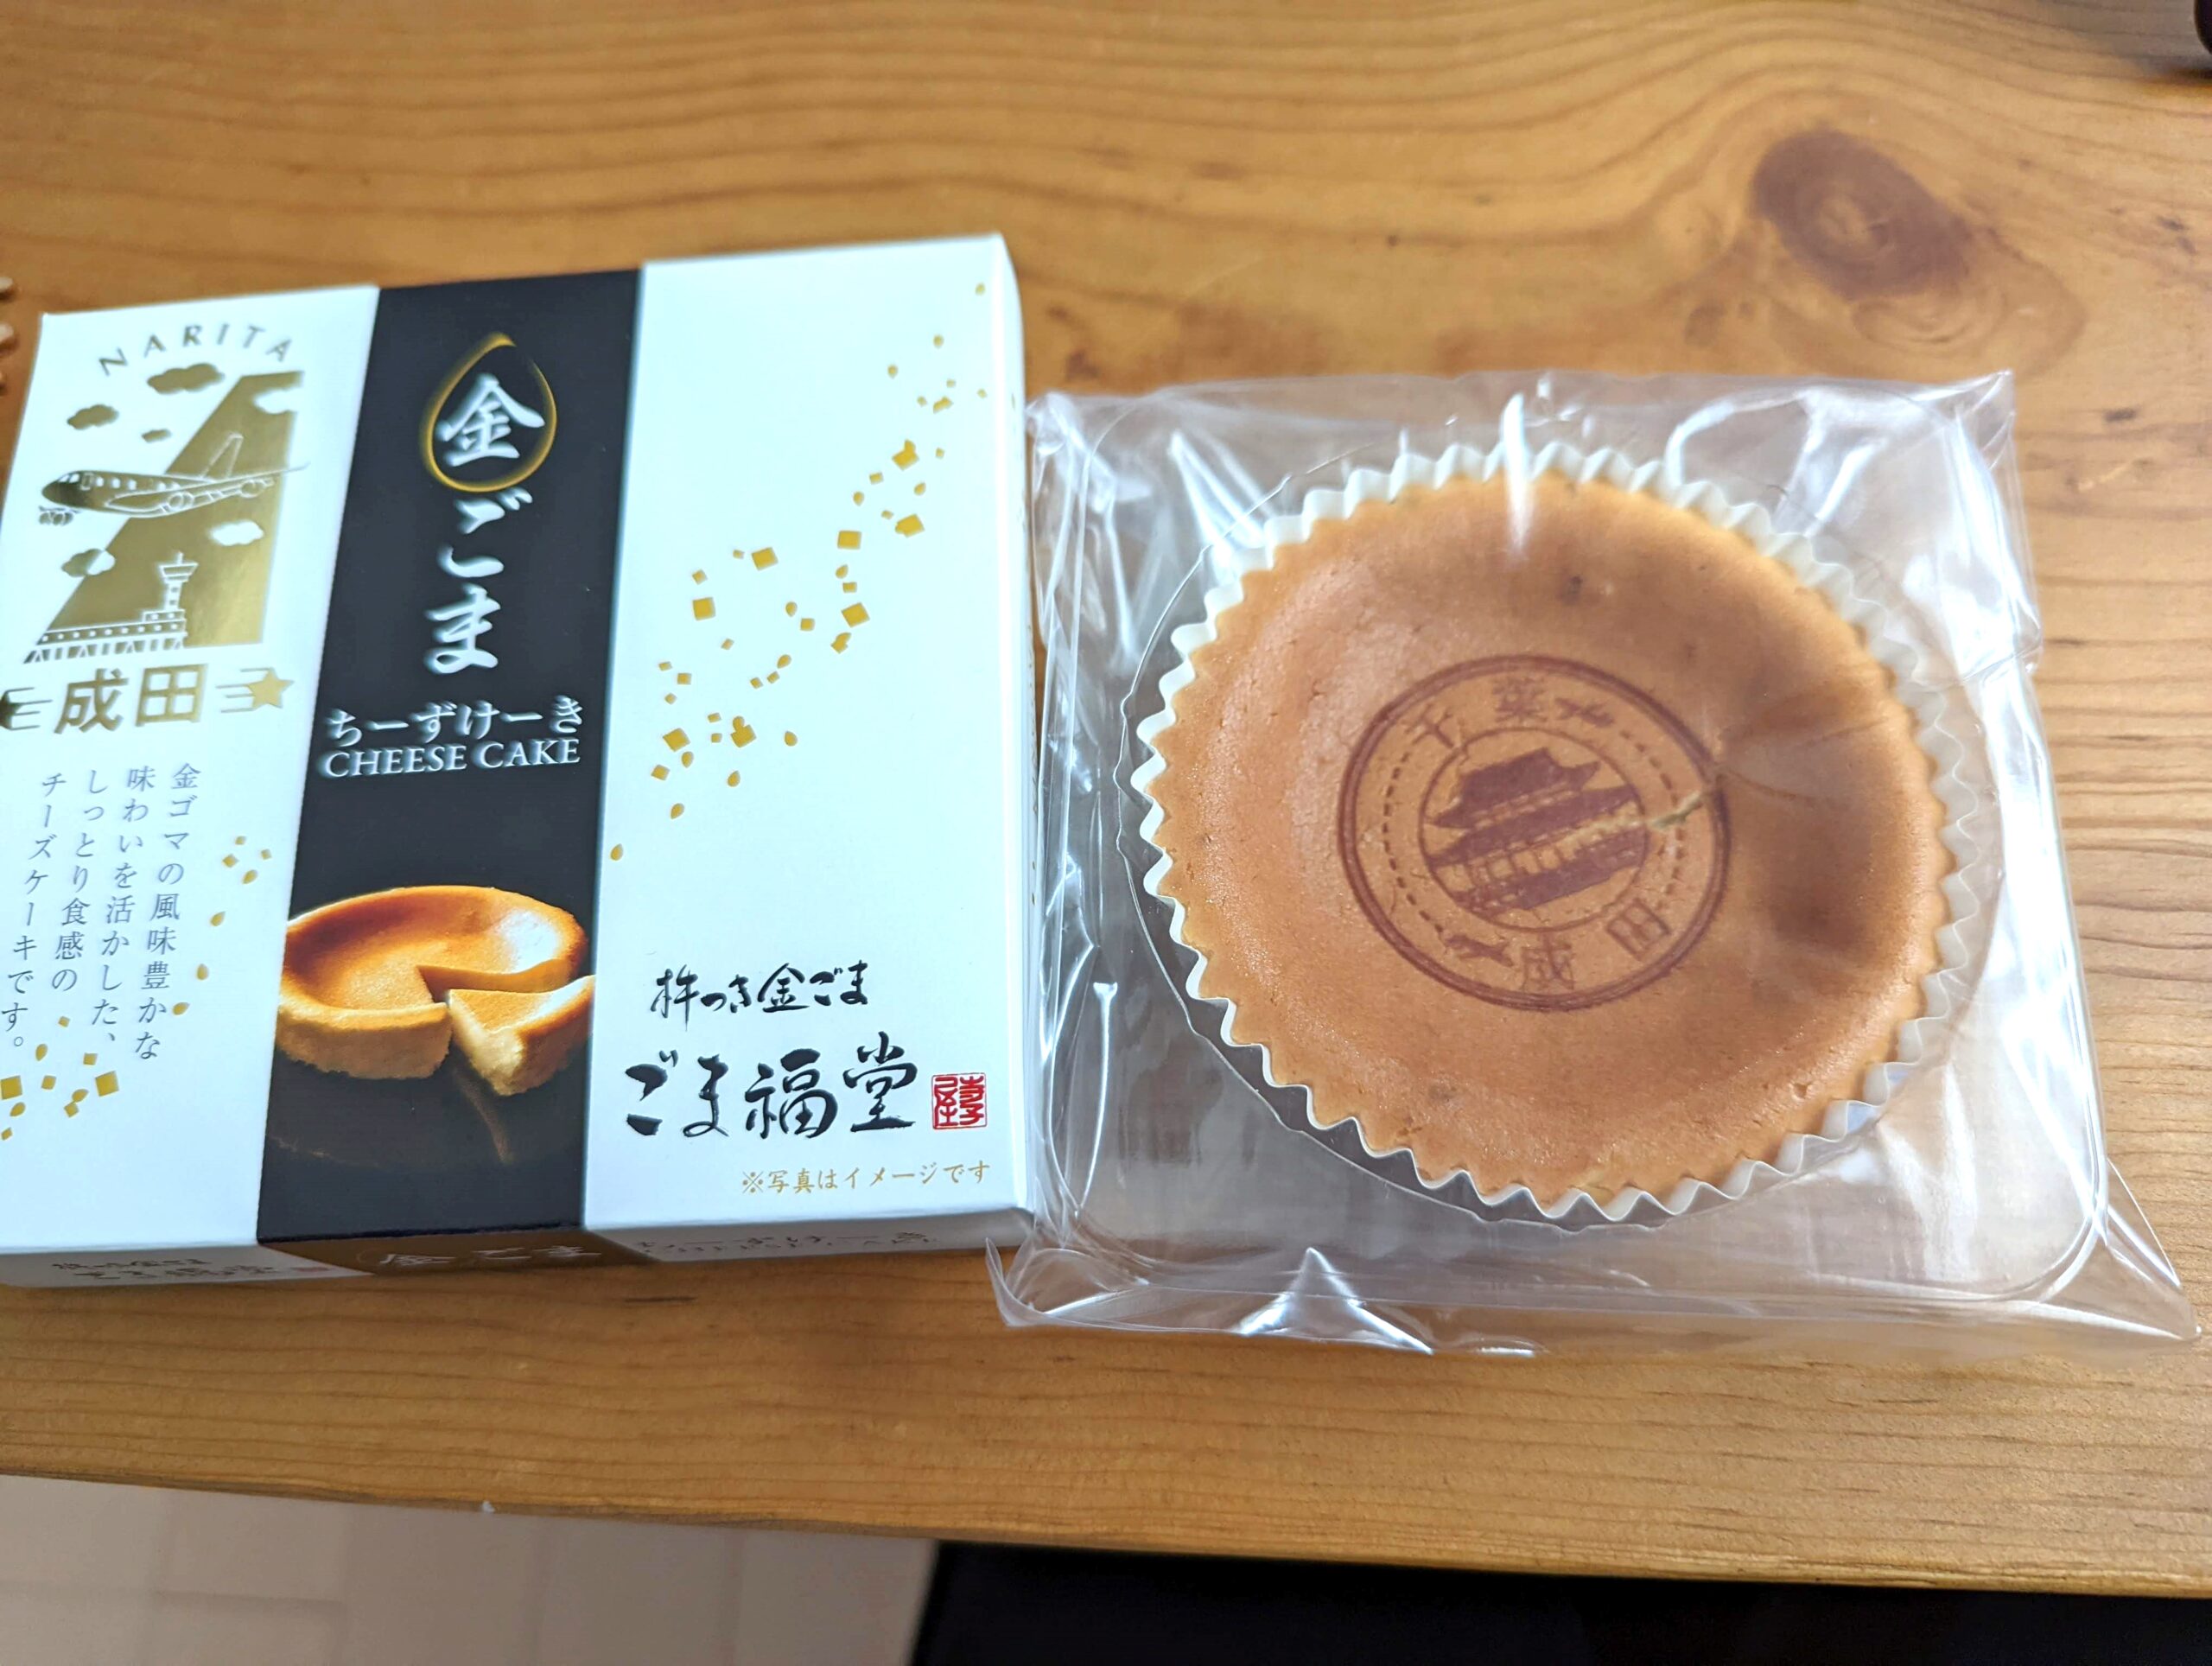 プチフロマージュ・ごま福堂の「金ごまチーズケーキ」 (4)